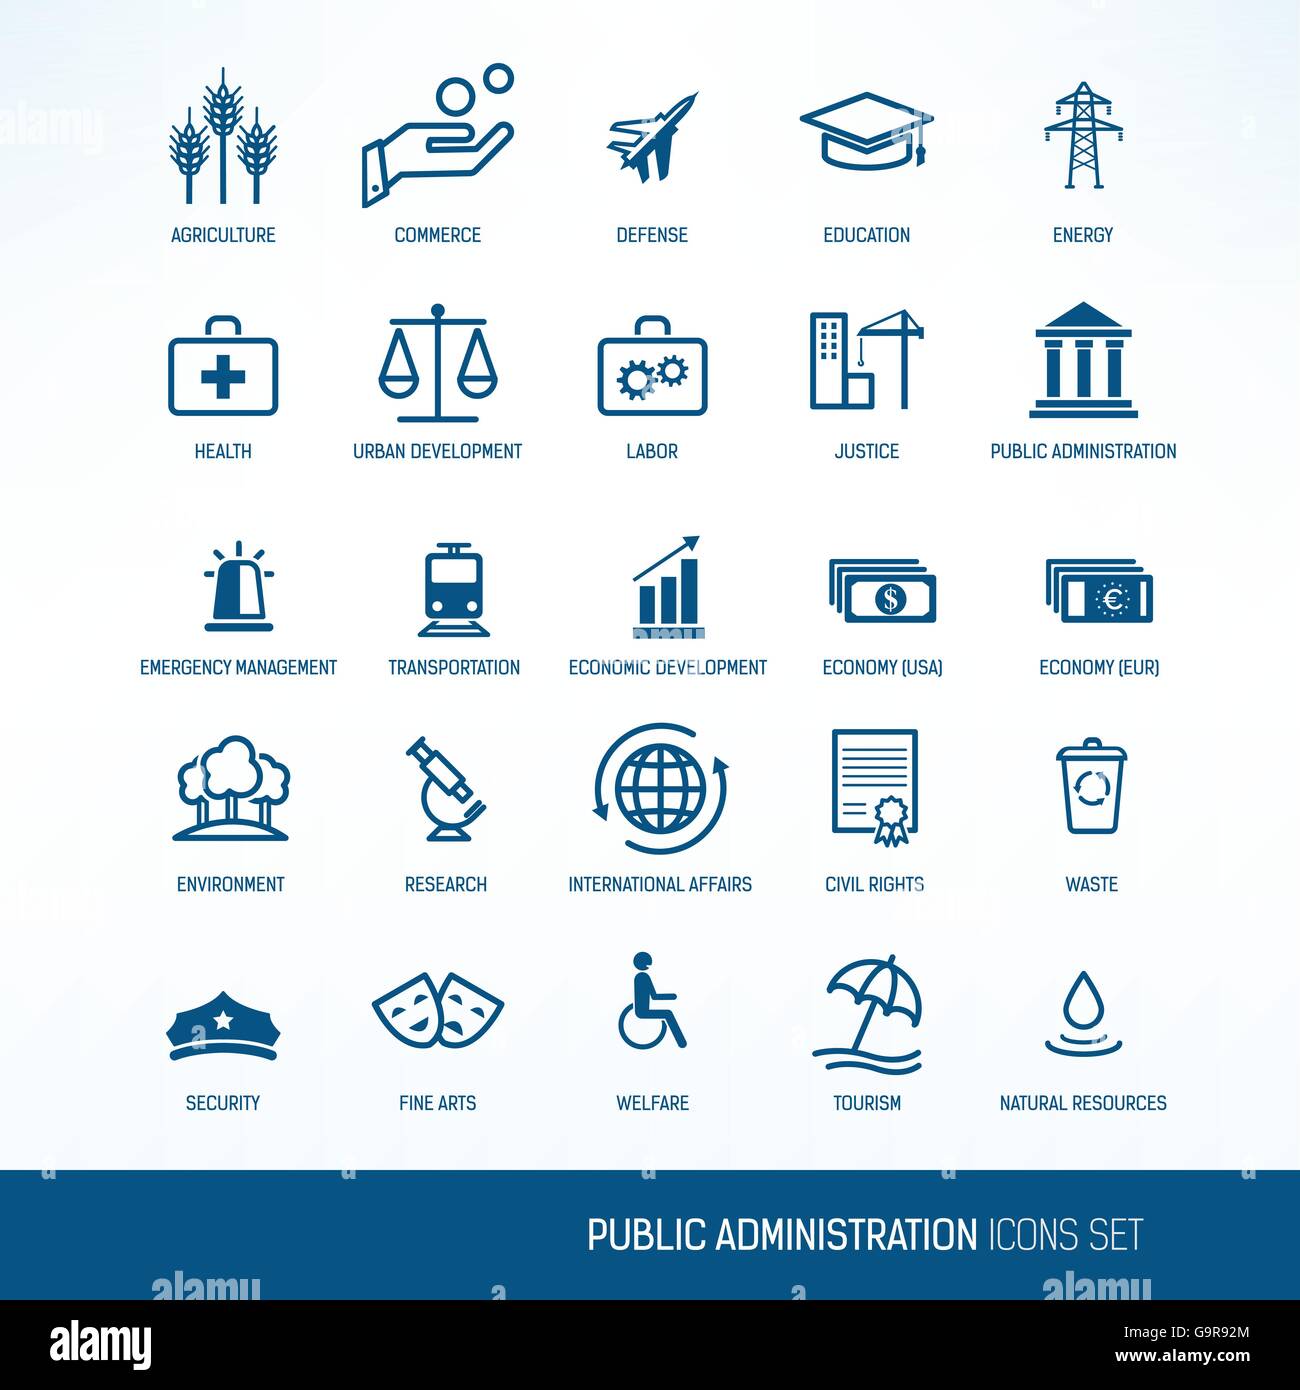 Le gouvernement et l'administration publique les ministères vector icons set Illustration de Vecteur